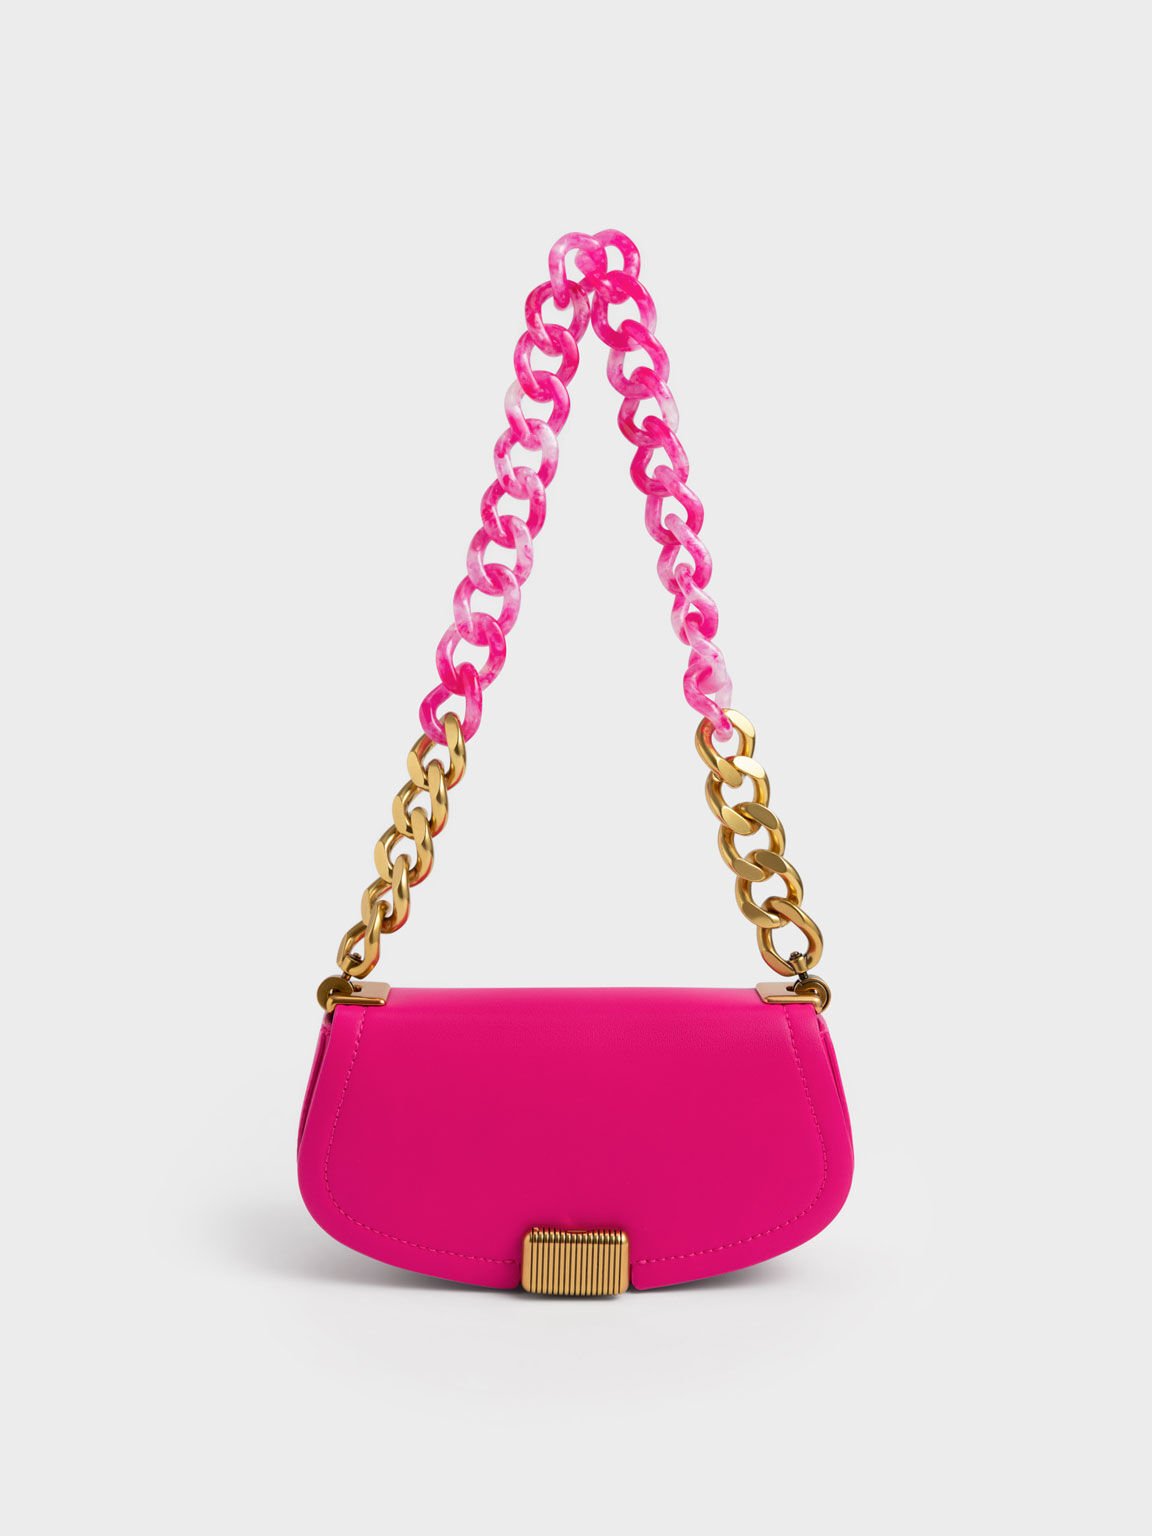 Pink Chunky Chain Link Hobo Bag, CHARLES & KEITH US